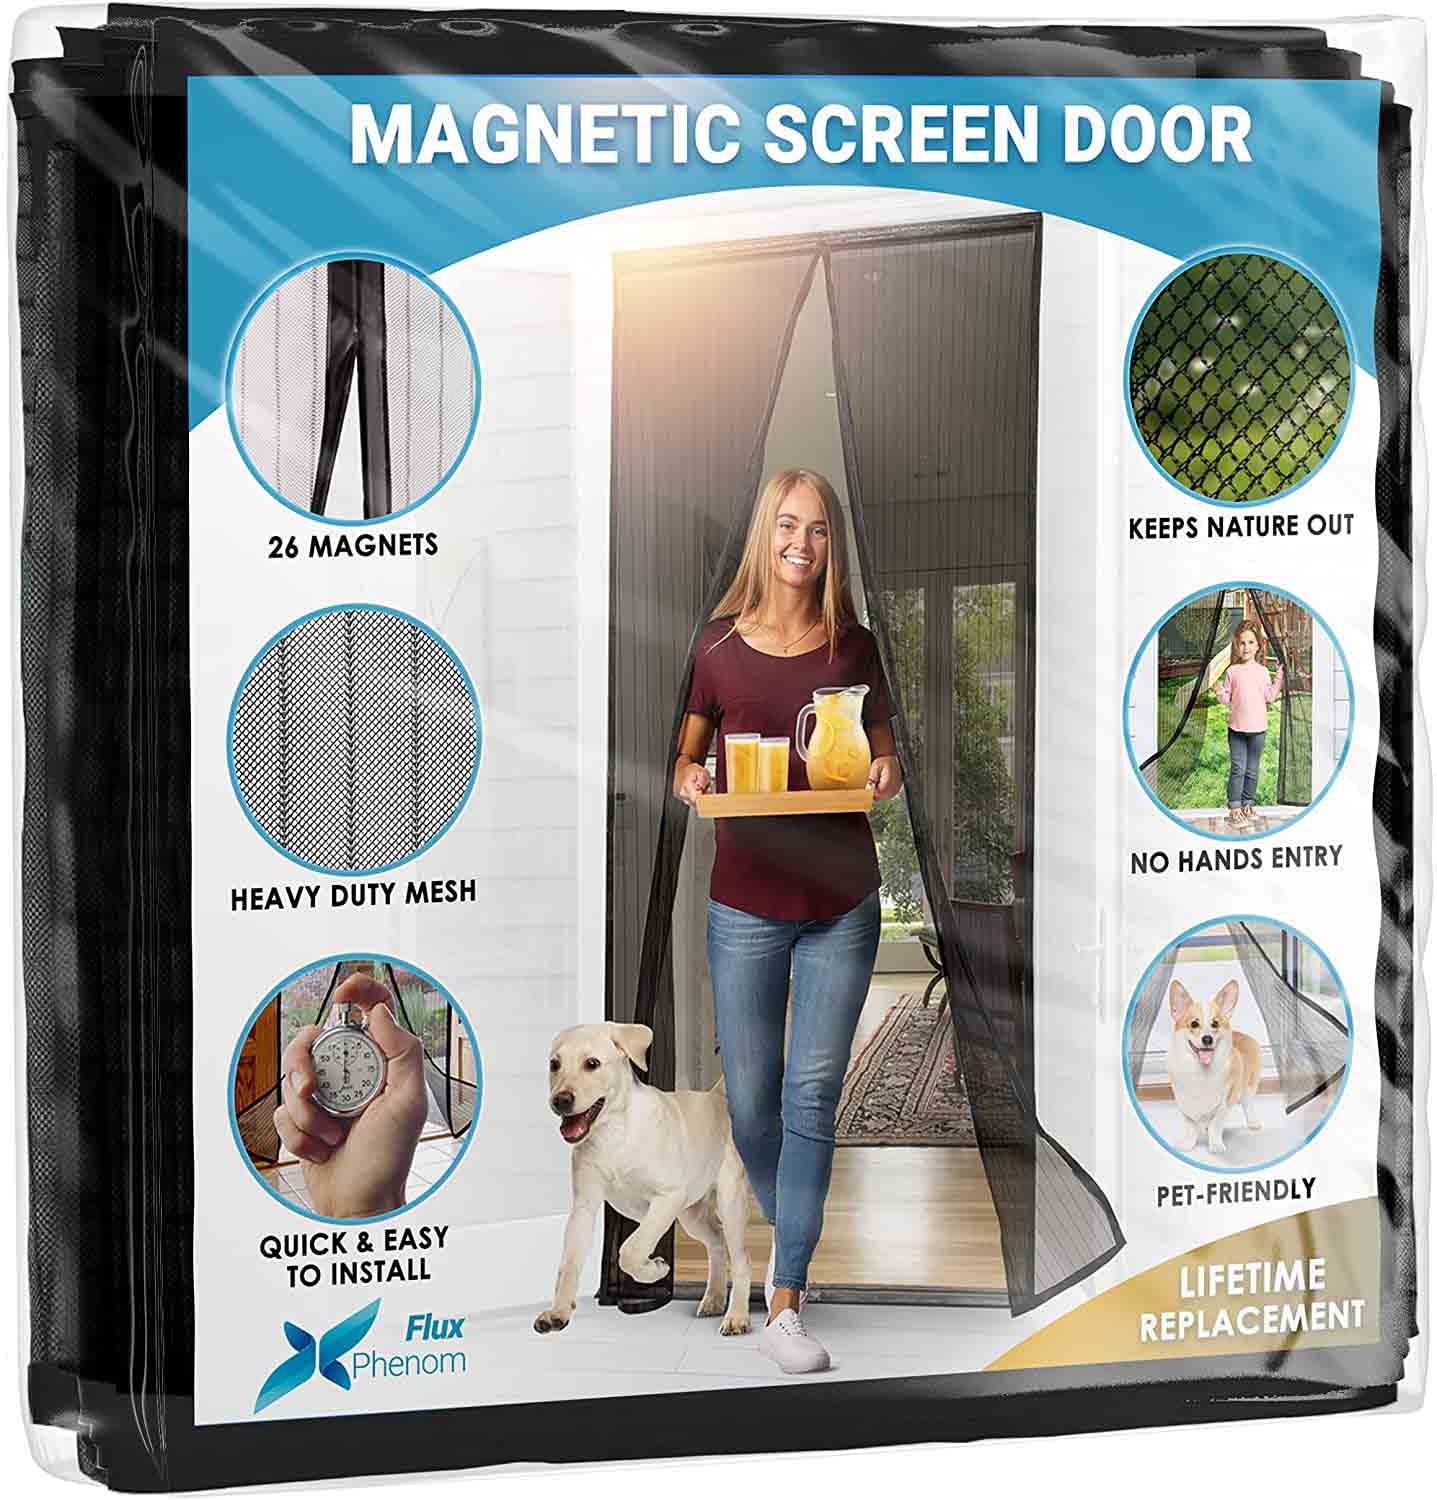  Flux Phenom Magnetic Screen Door - Retractable Mesh with Self Sealing